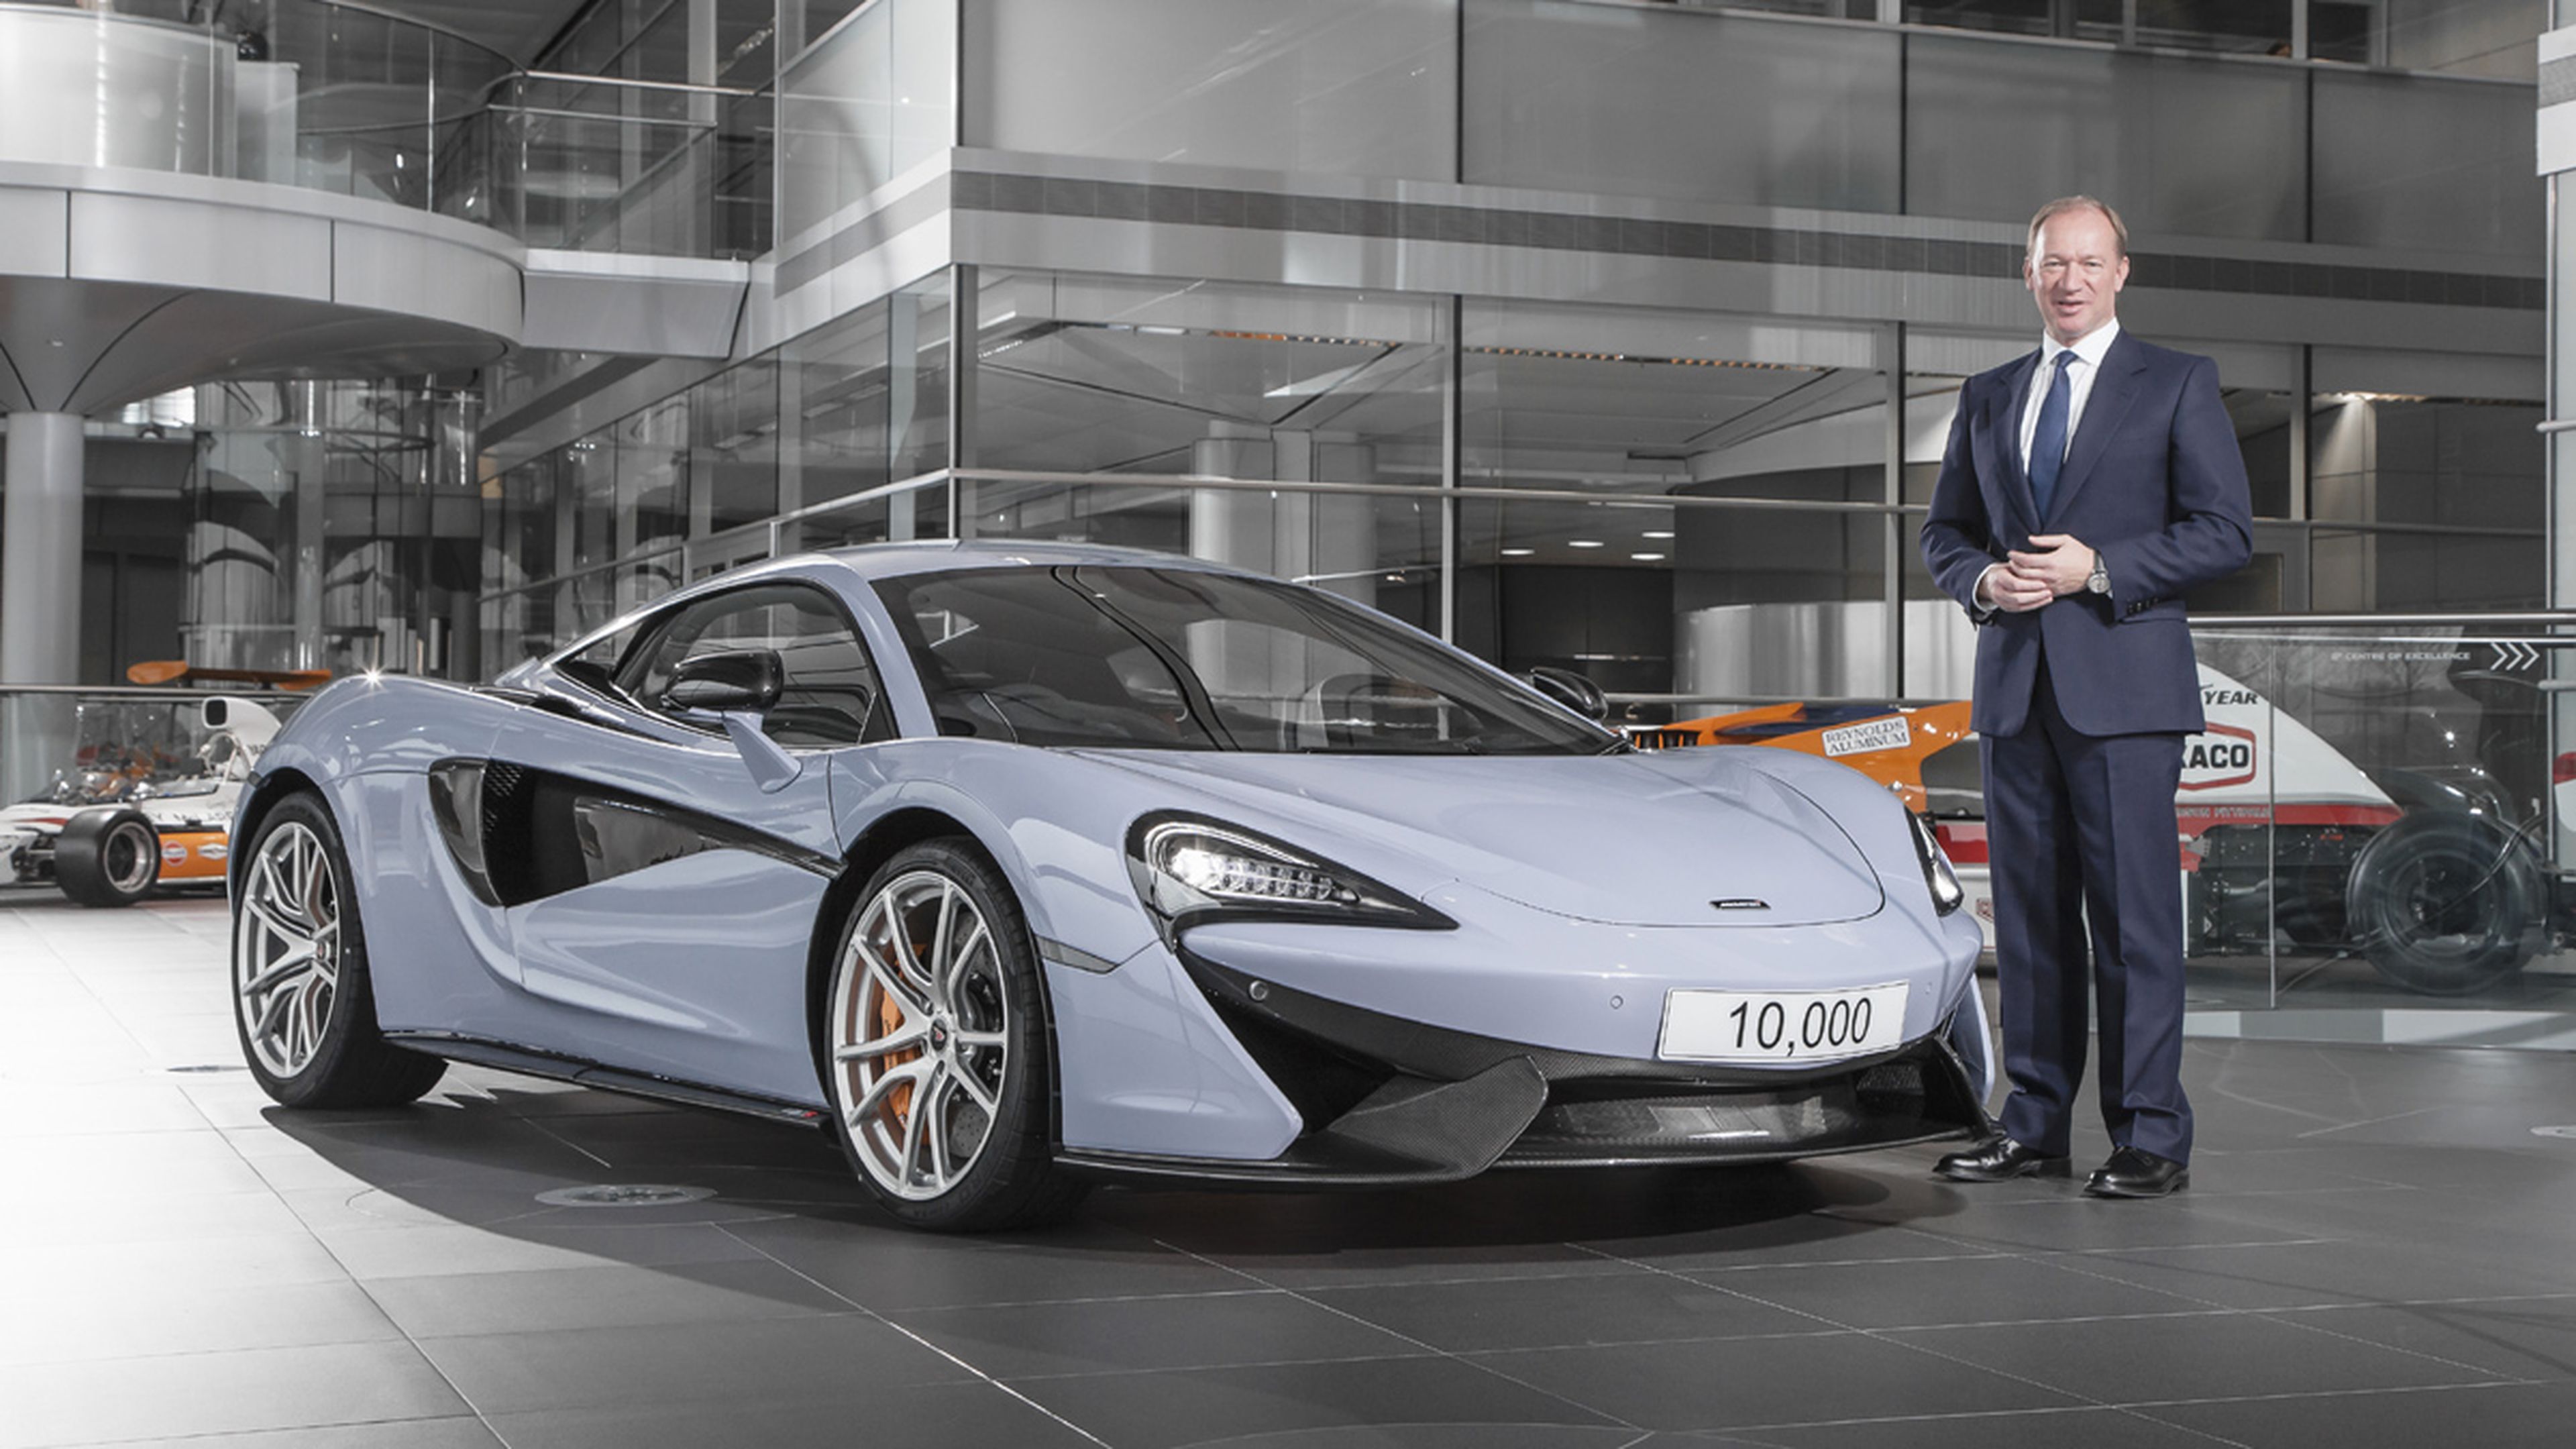 McLaren fabrica más de 10.000 coches